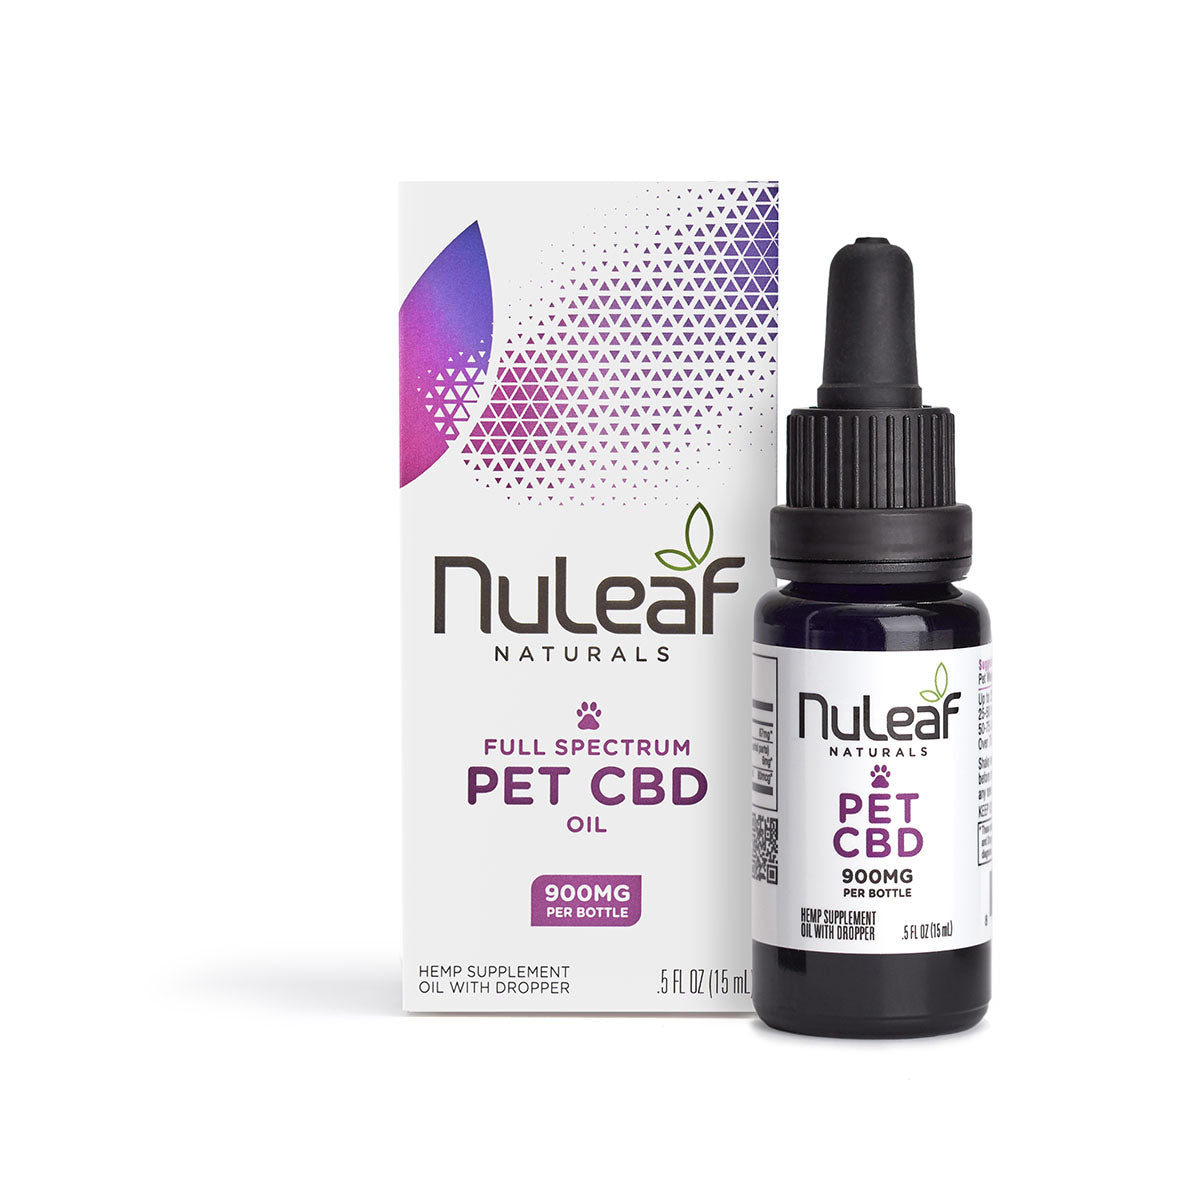 NuLeaf Naturals Full Spectrum Pet CBD Oil